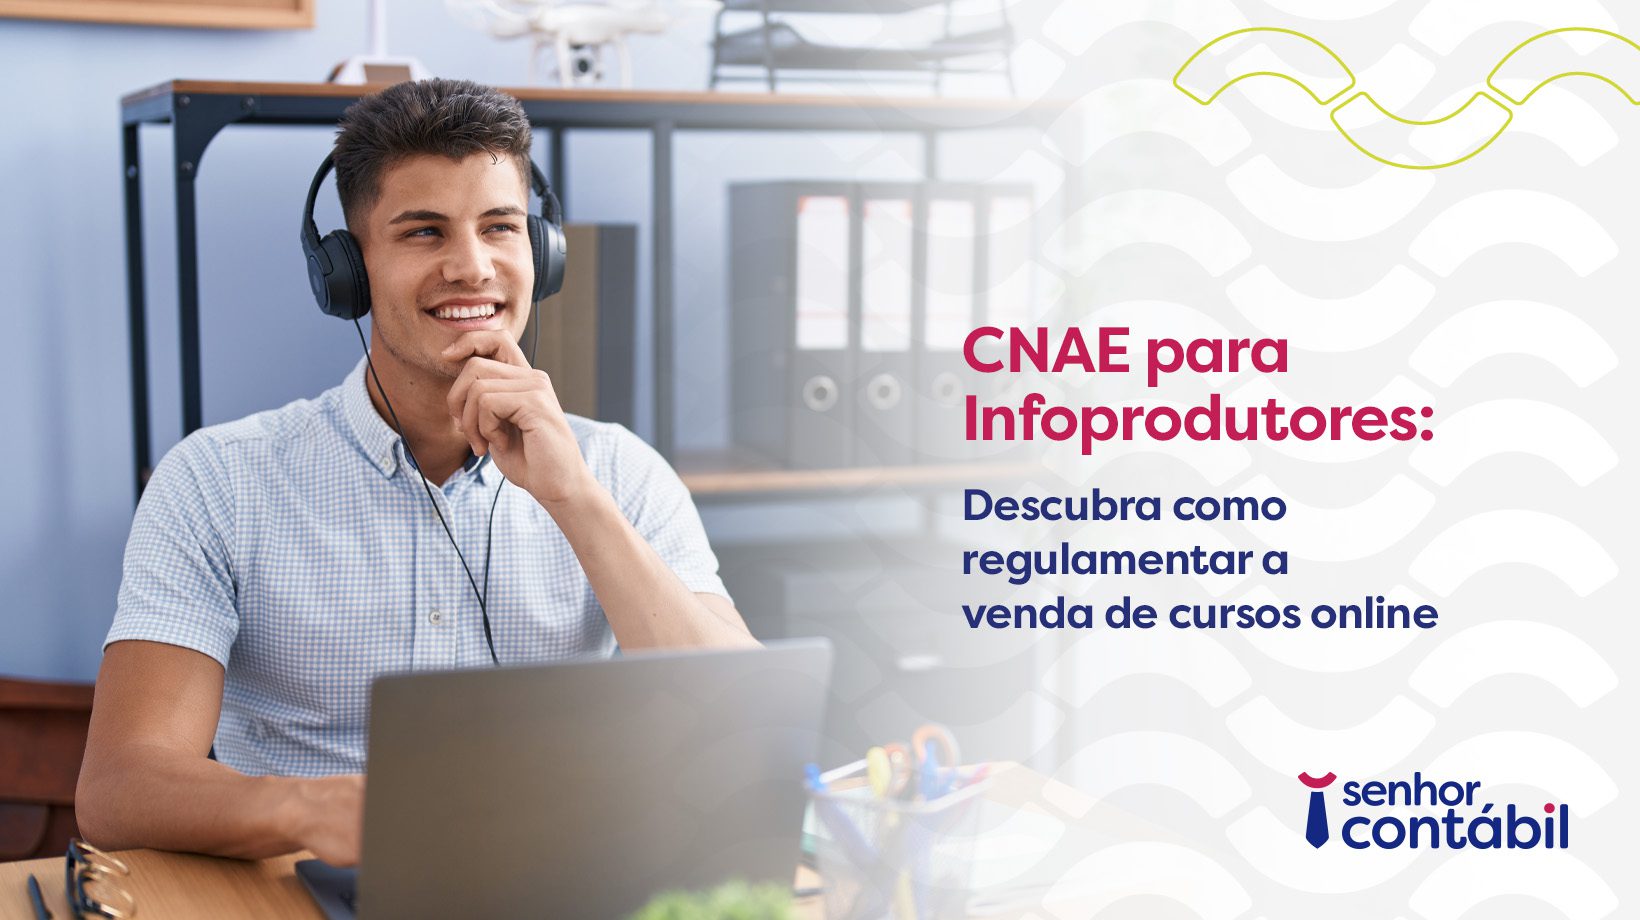 CNAE para Infoprodutores: Descubra como regulamentar a venda de cursos online